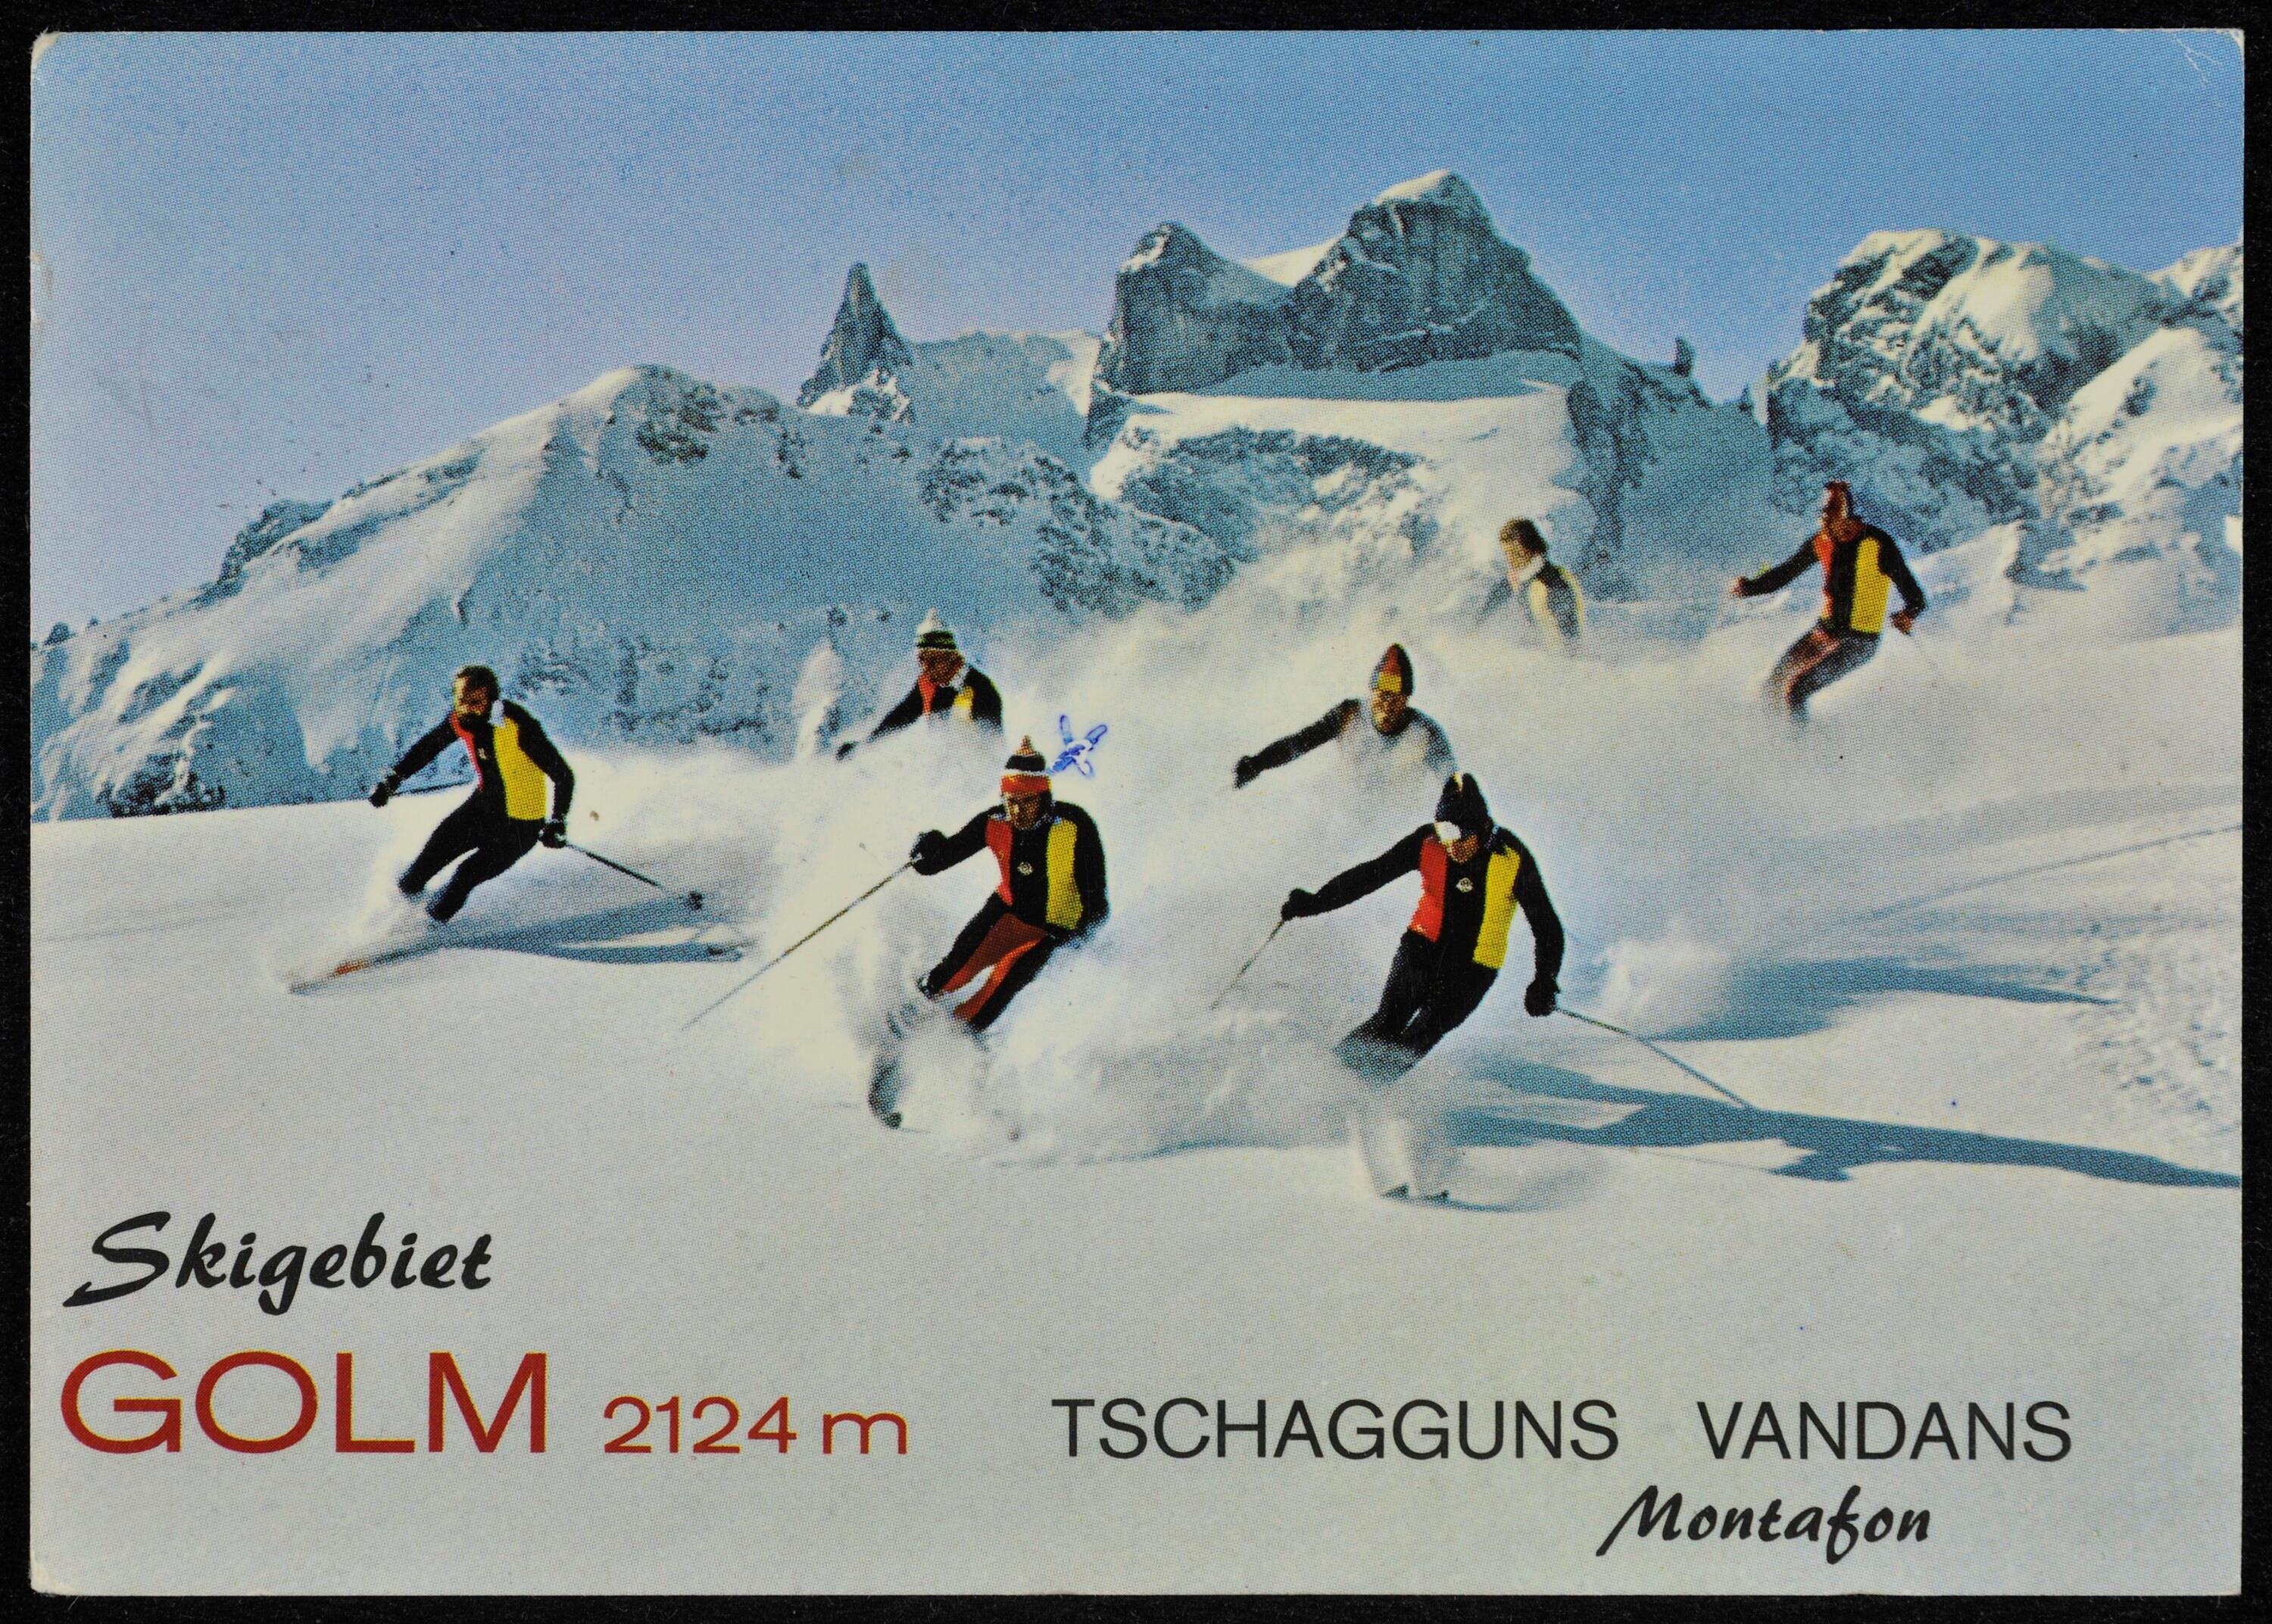 Skigebiet Golm 2124 m Tschagguns Vandans Montafon></div>


    <hr>
    <div class=